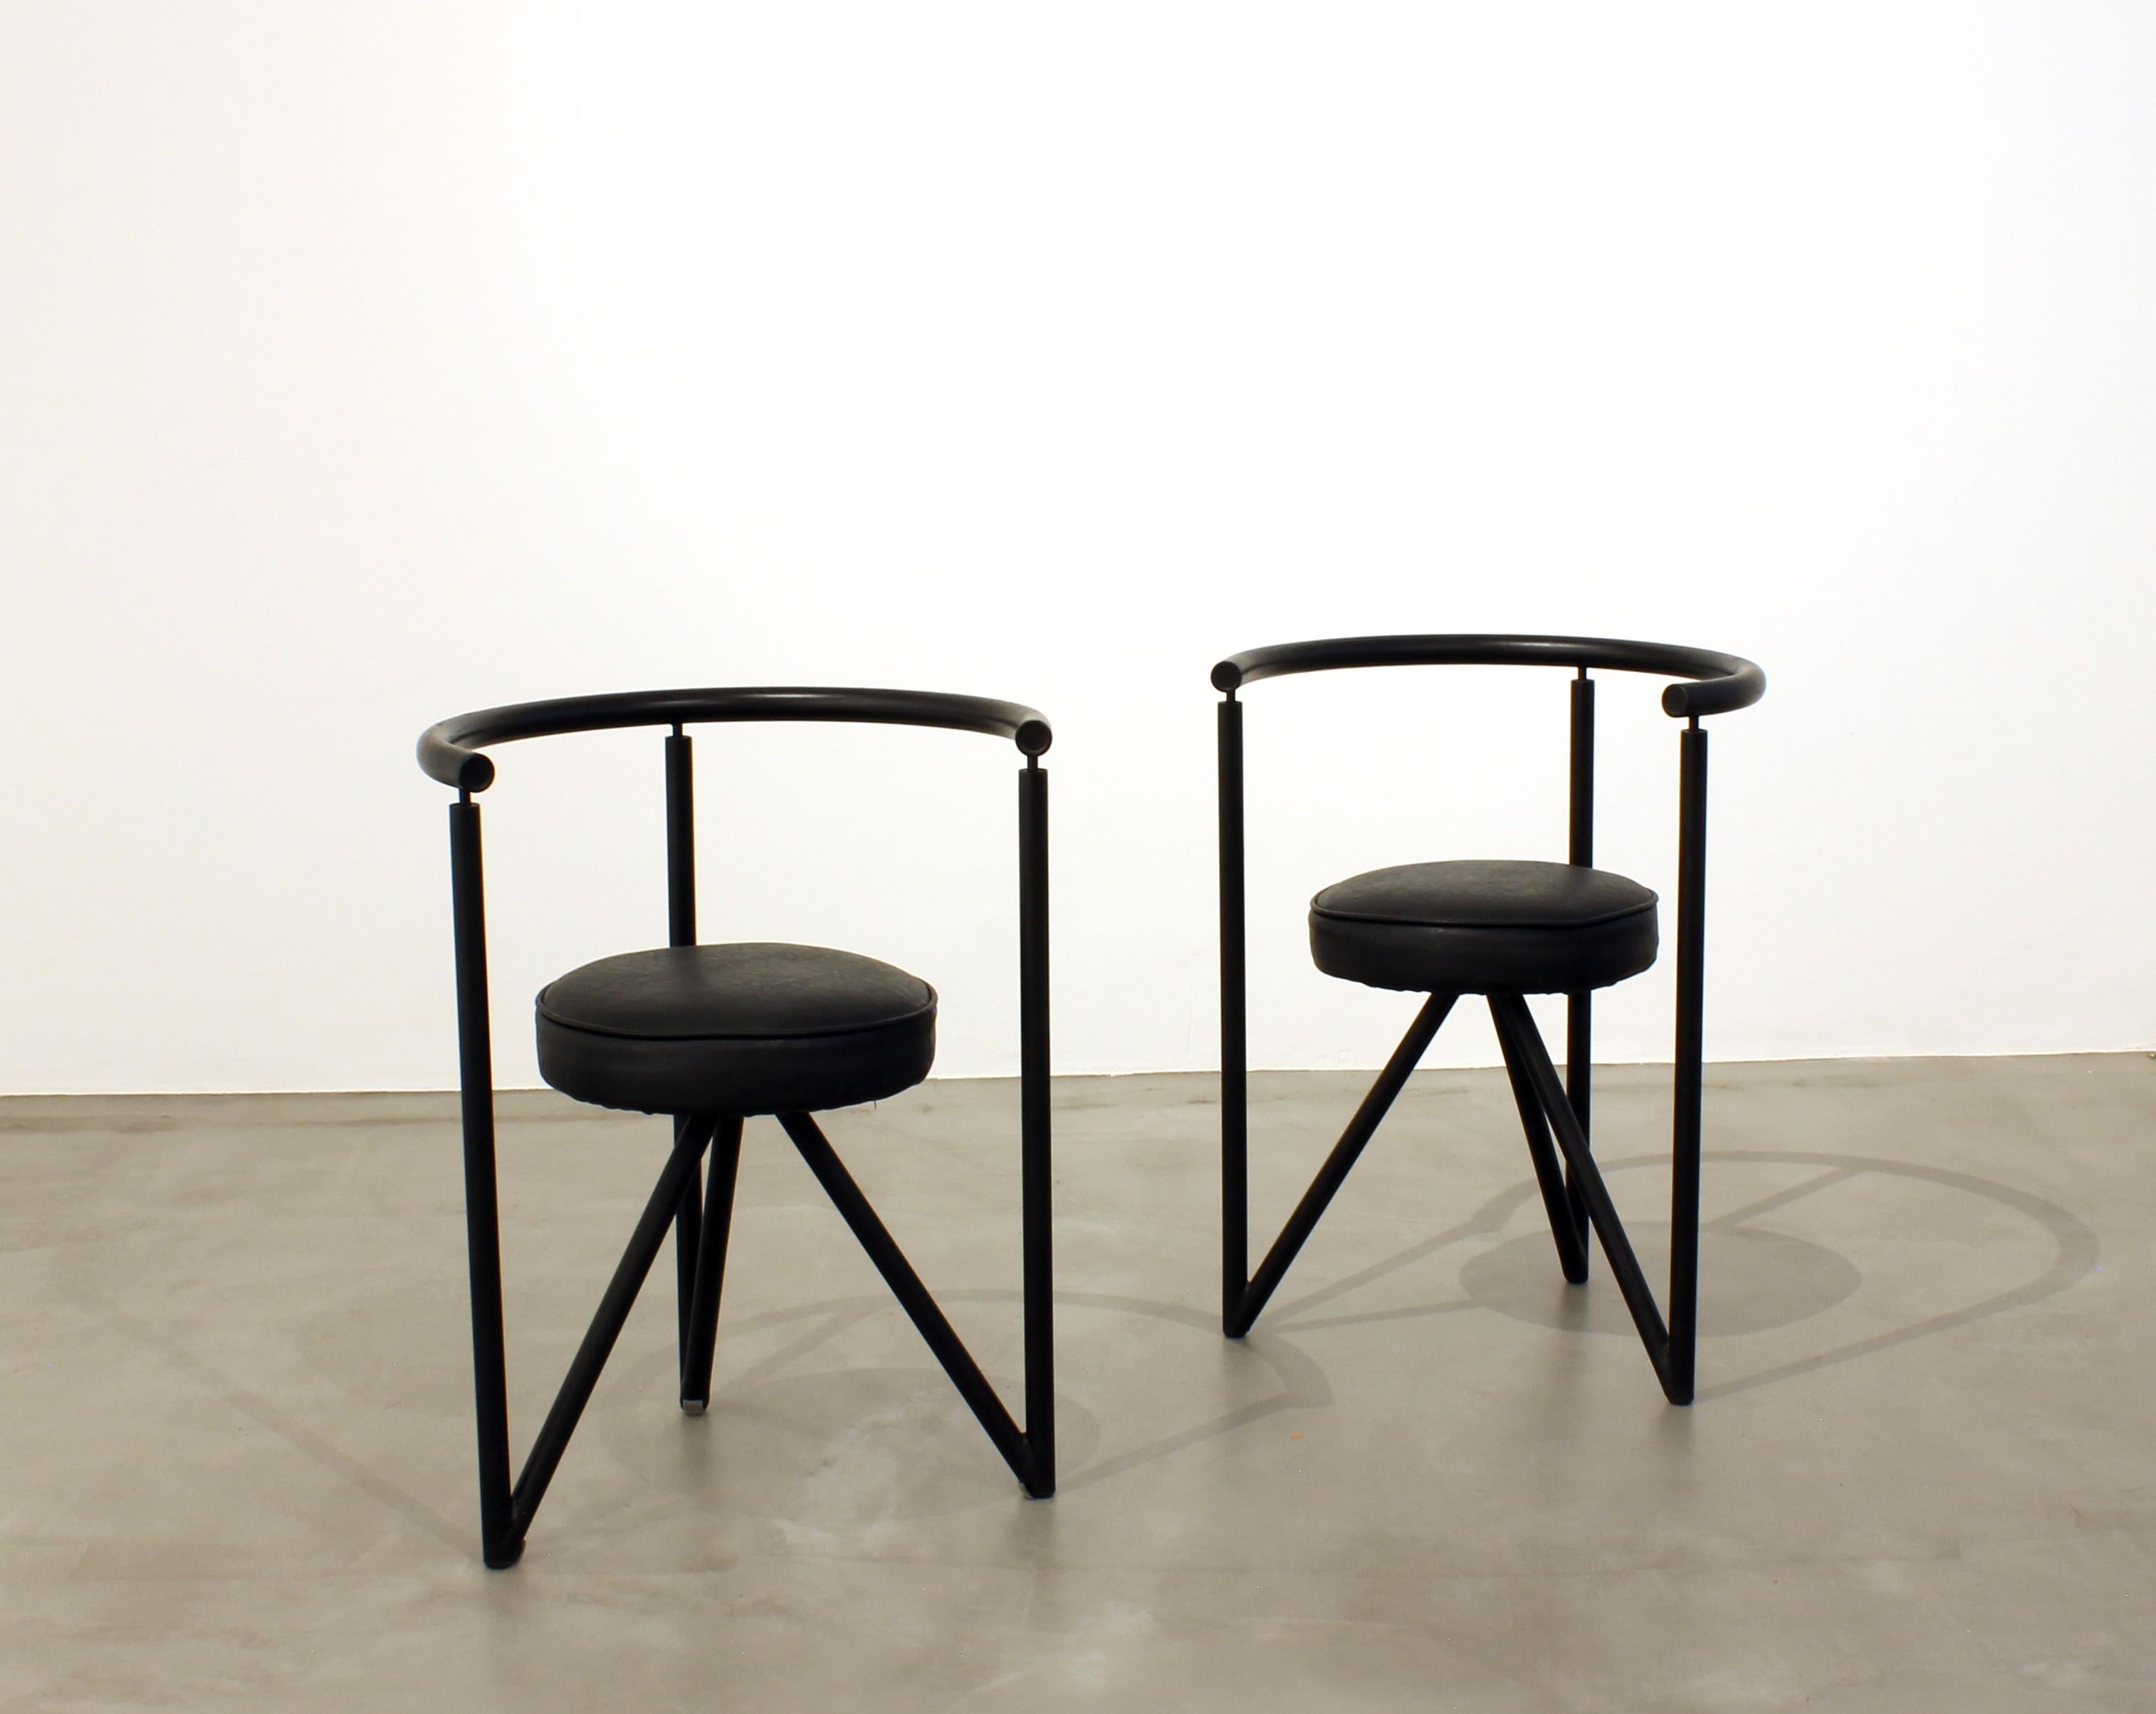 Paire de chaises Miss Dorn par Philippe Starck pour Disform 1982. Structure en métal noir et assise ronde et rembourrée.